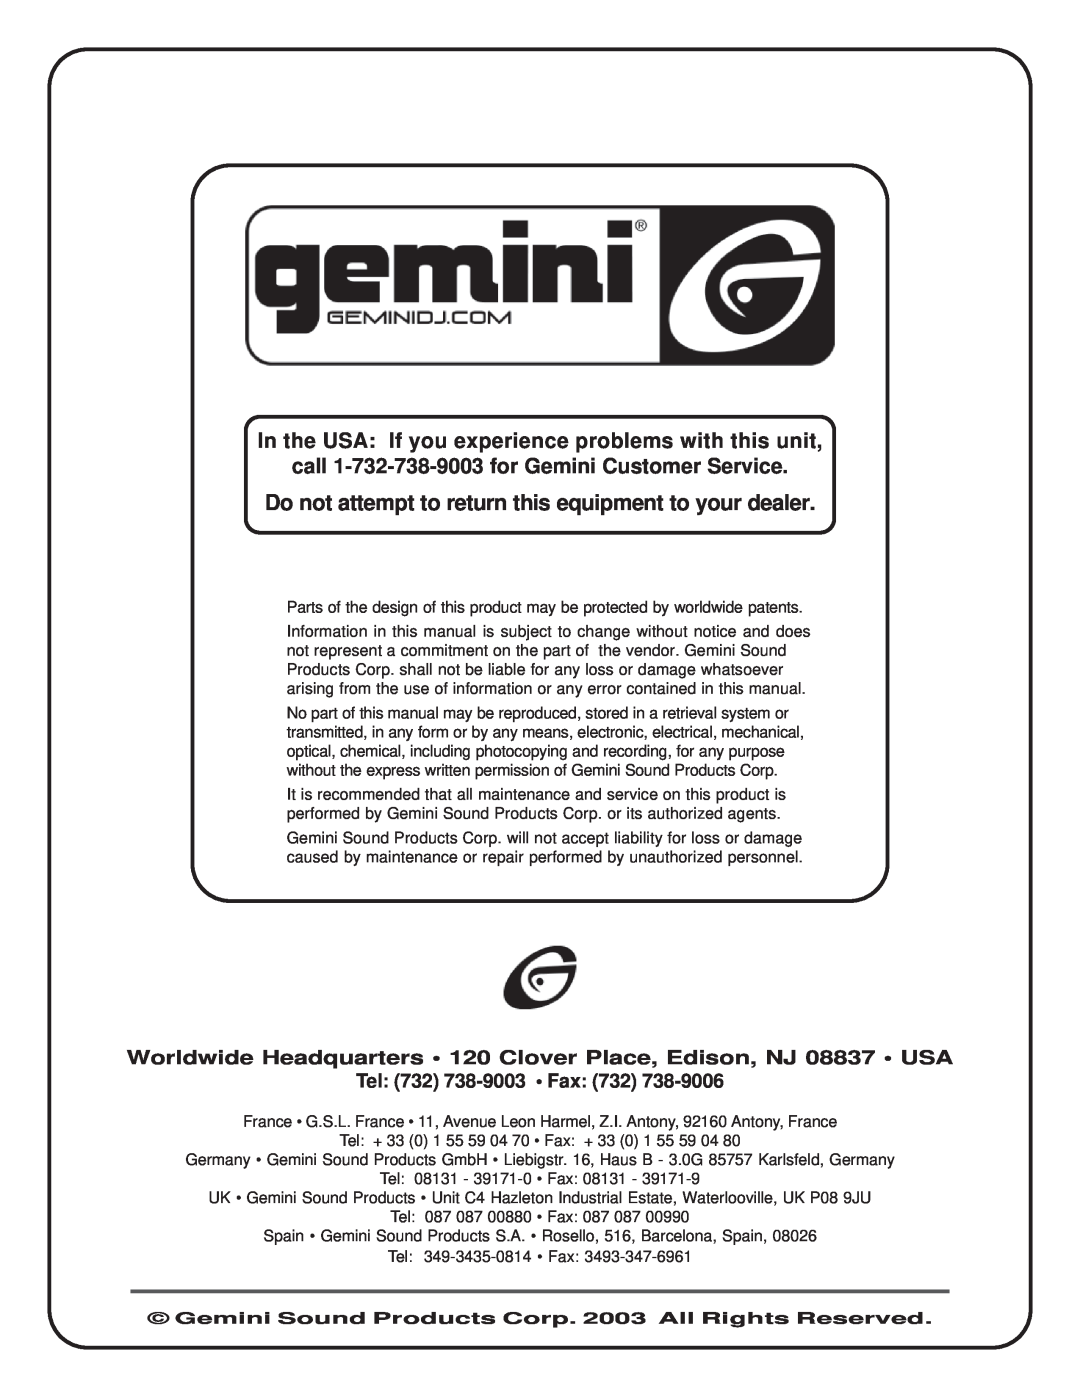 Gemini CDJ-1200 manual call 1-732-738-9003for Gemini Customer Service, Tel 732 738-9003 Fax 